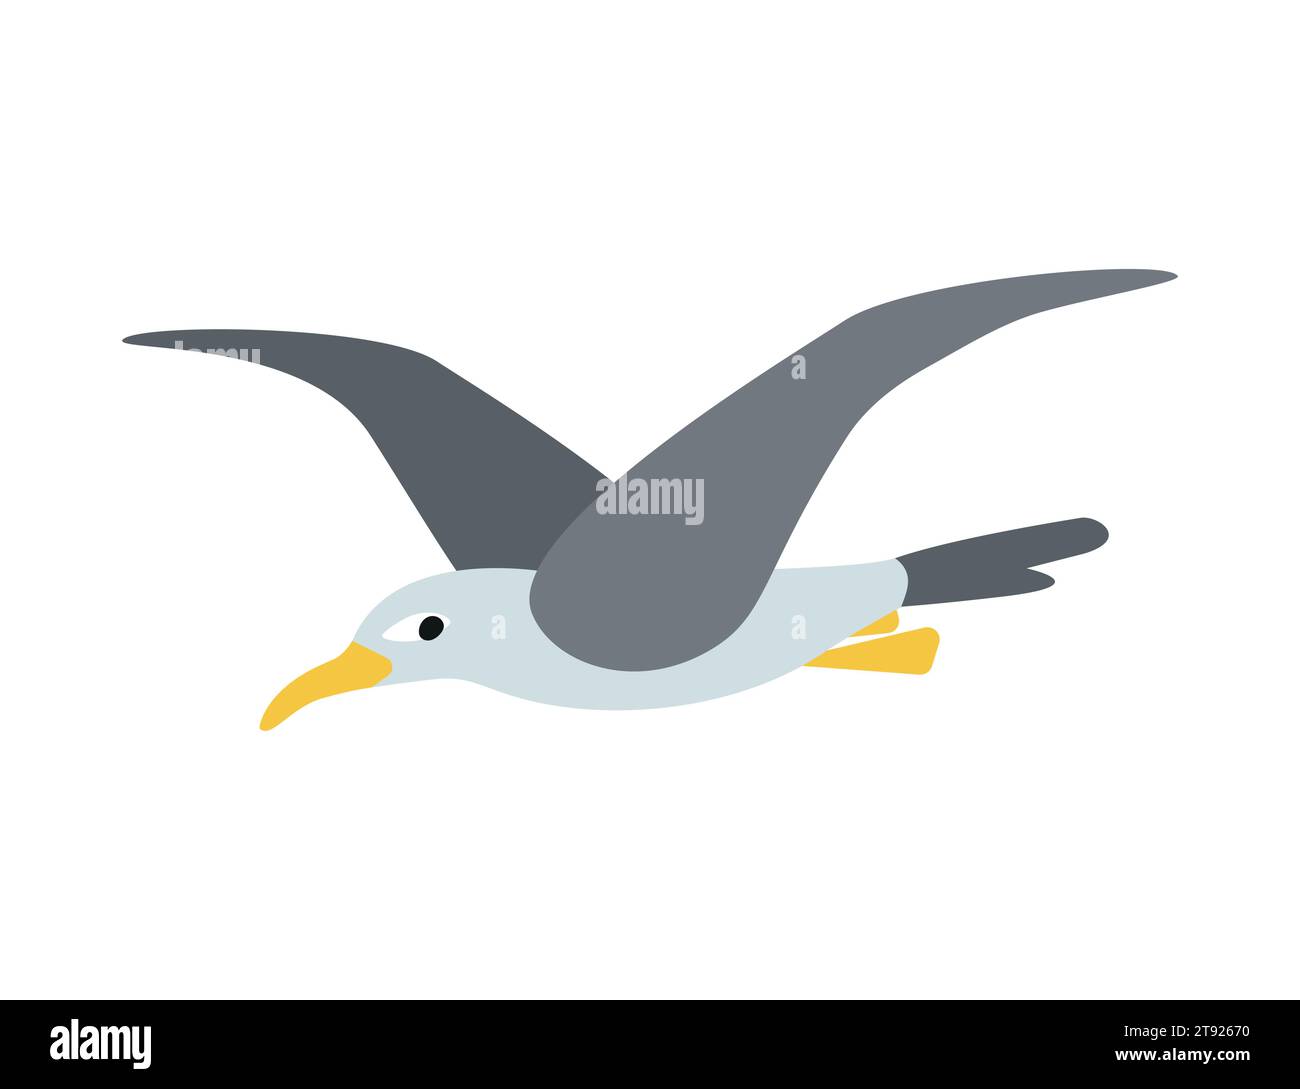 Vektor isolierte Illustration mit flachem fliegenden Seevögel. Die Möwe hat einen weißen Körper, graue Flügel und einen gelben Schnabel. Eine Meeresmöwe ist in der Luft gleiten. Ausschneiden Stock Vektor